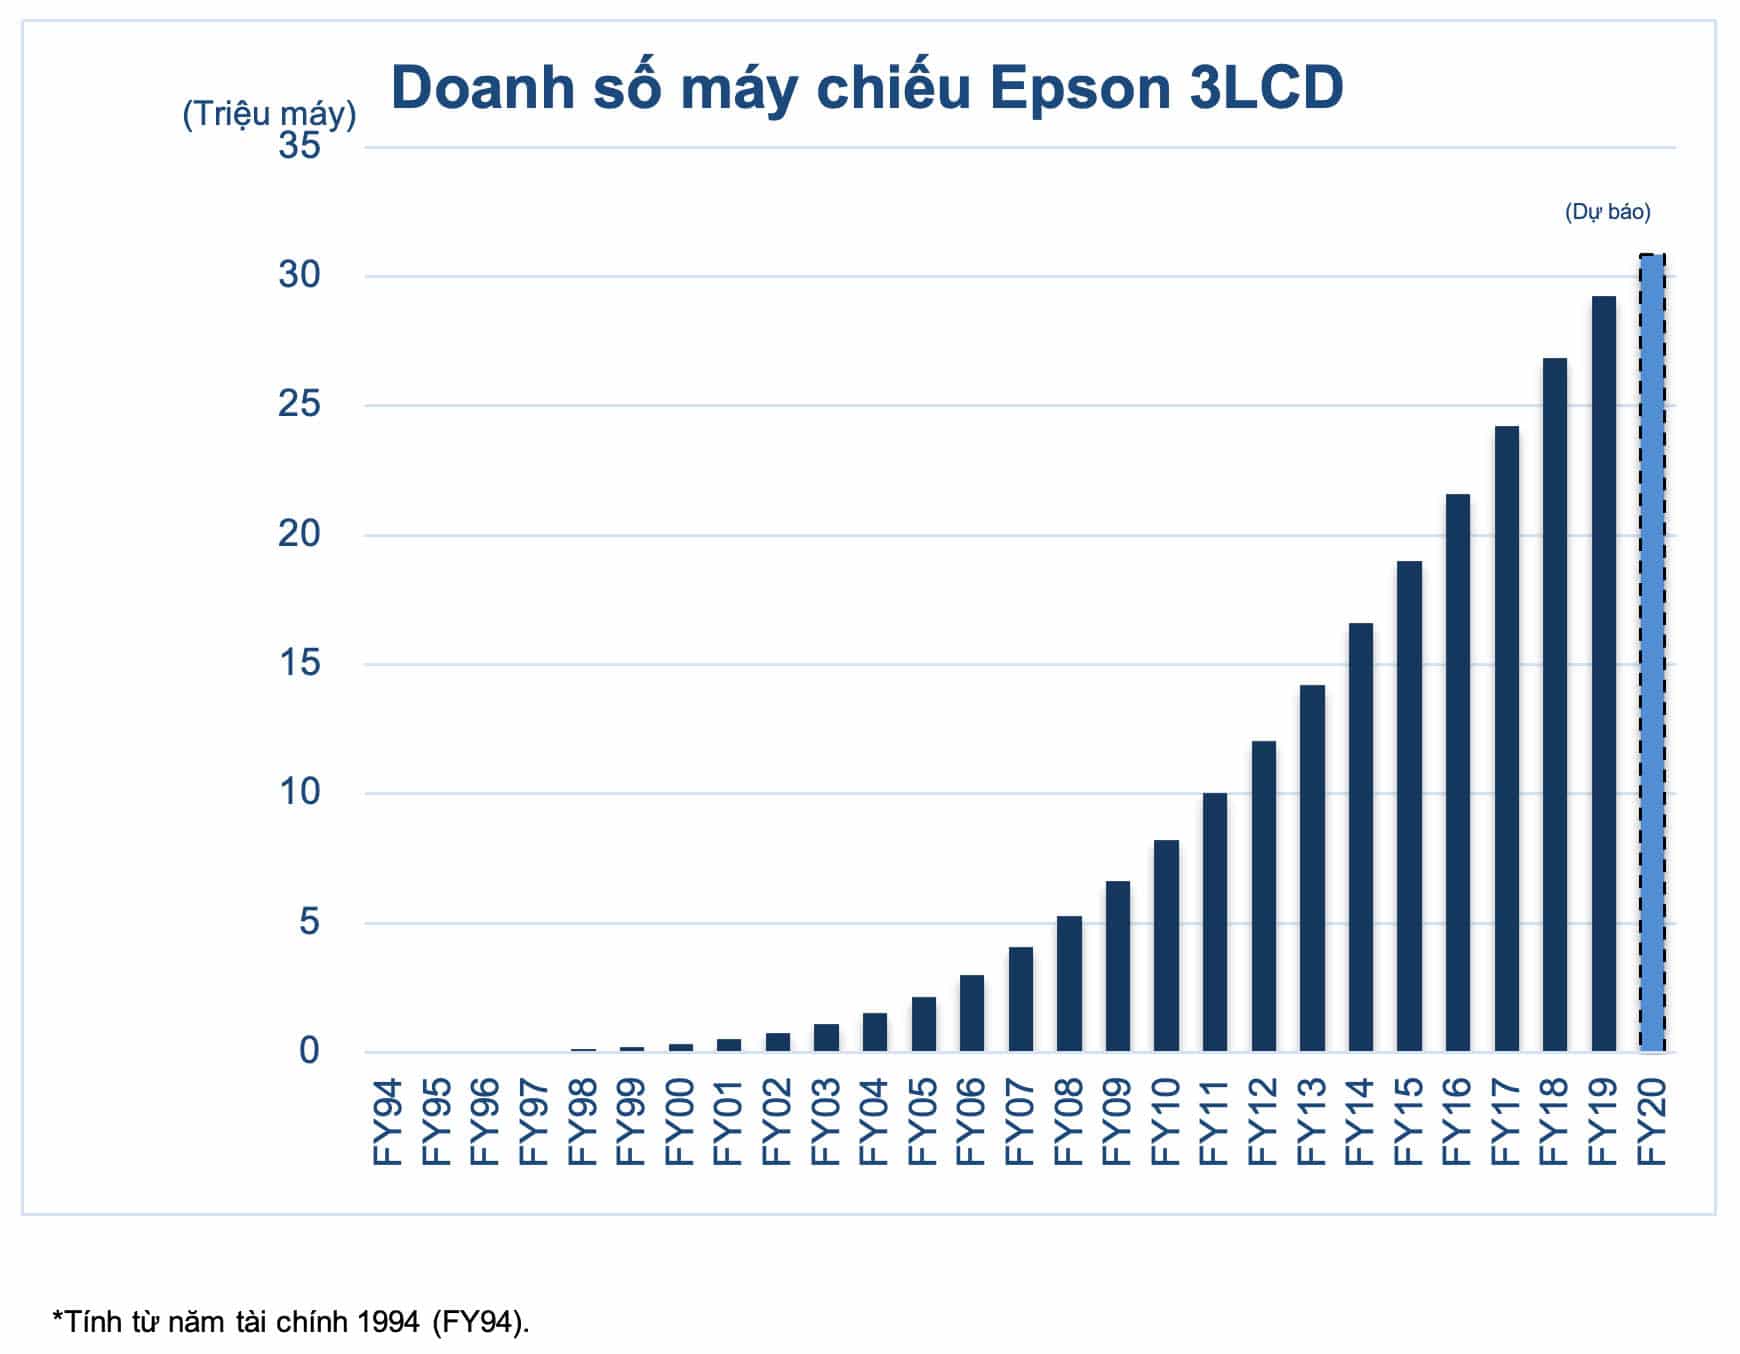 Máy chiếu Epson 3LCD đạt được tổng doanh số bán hàng 30 triệu máy trên toàn cầu